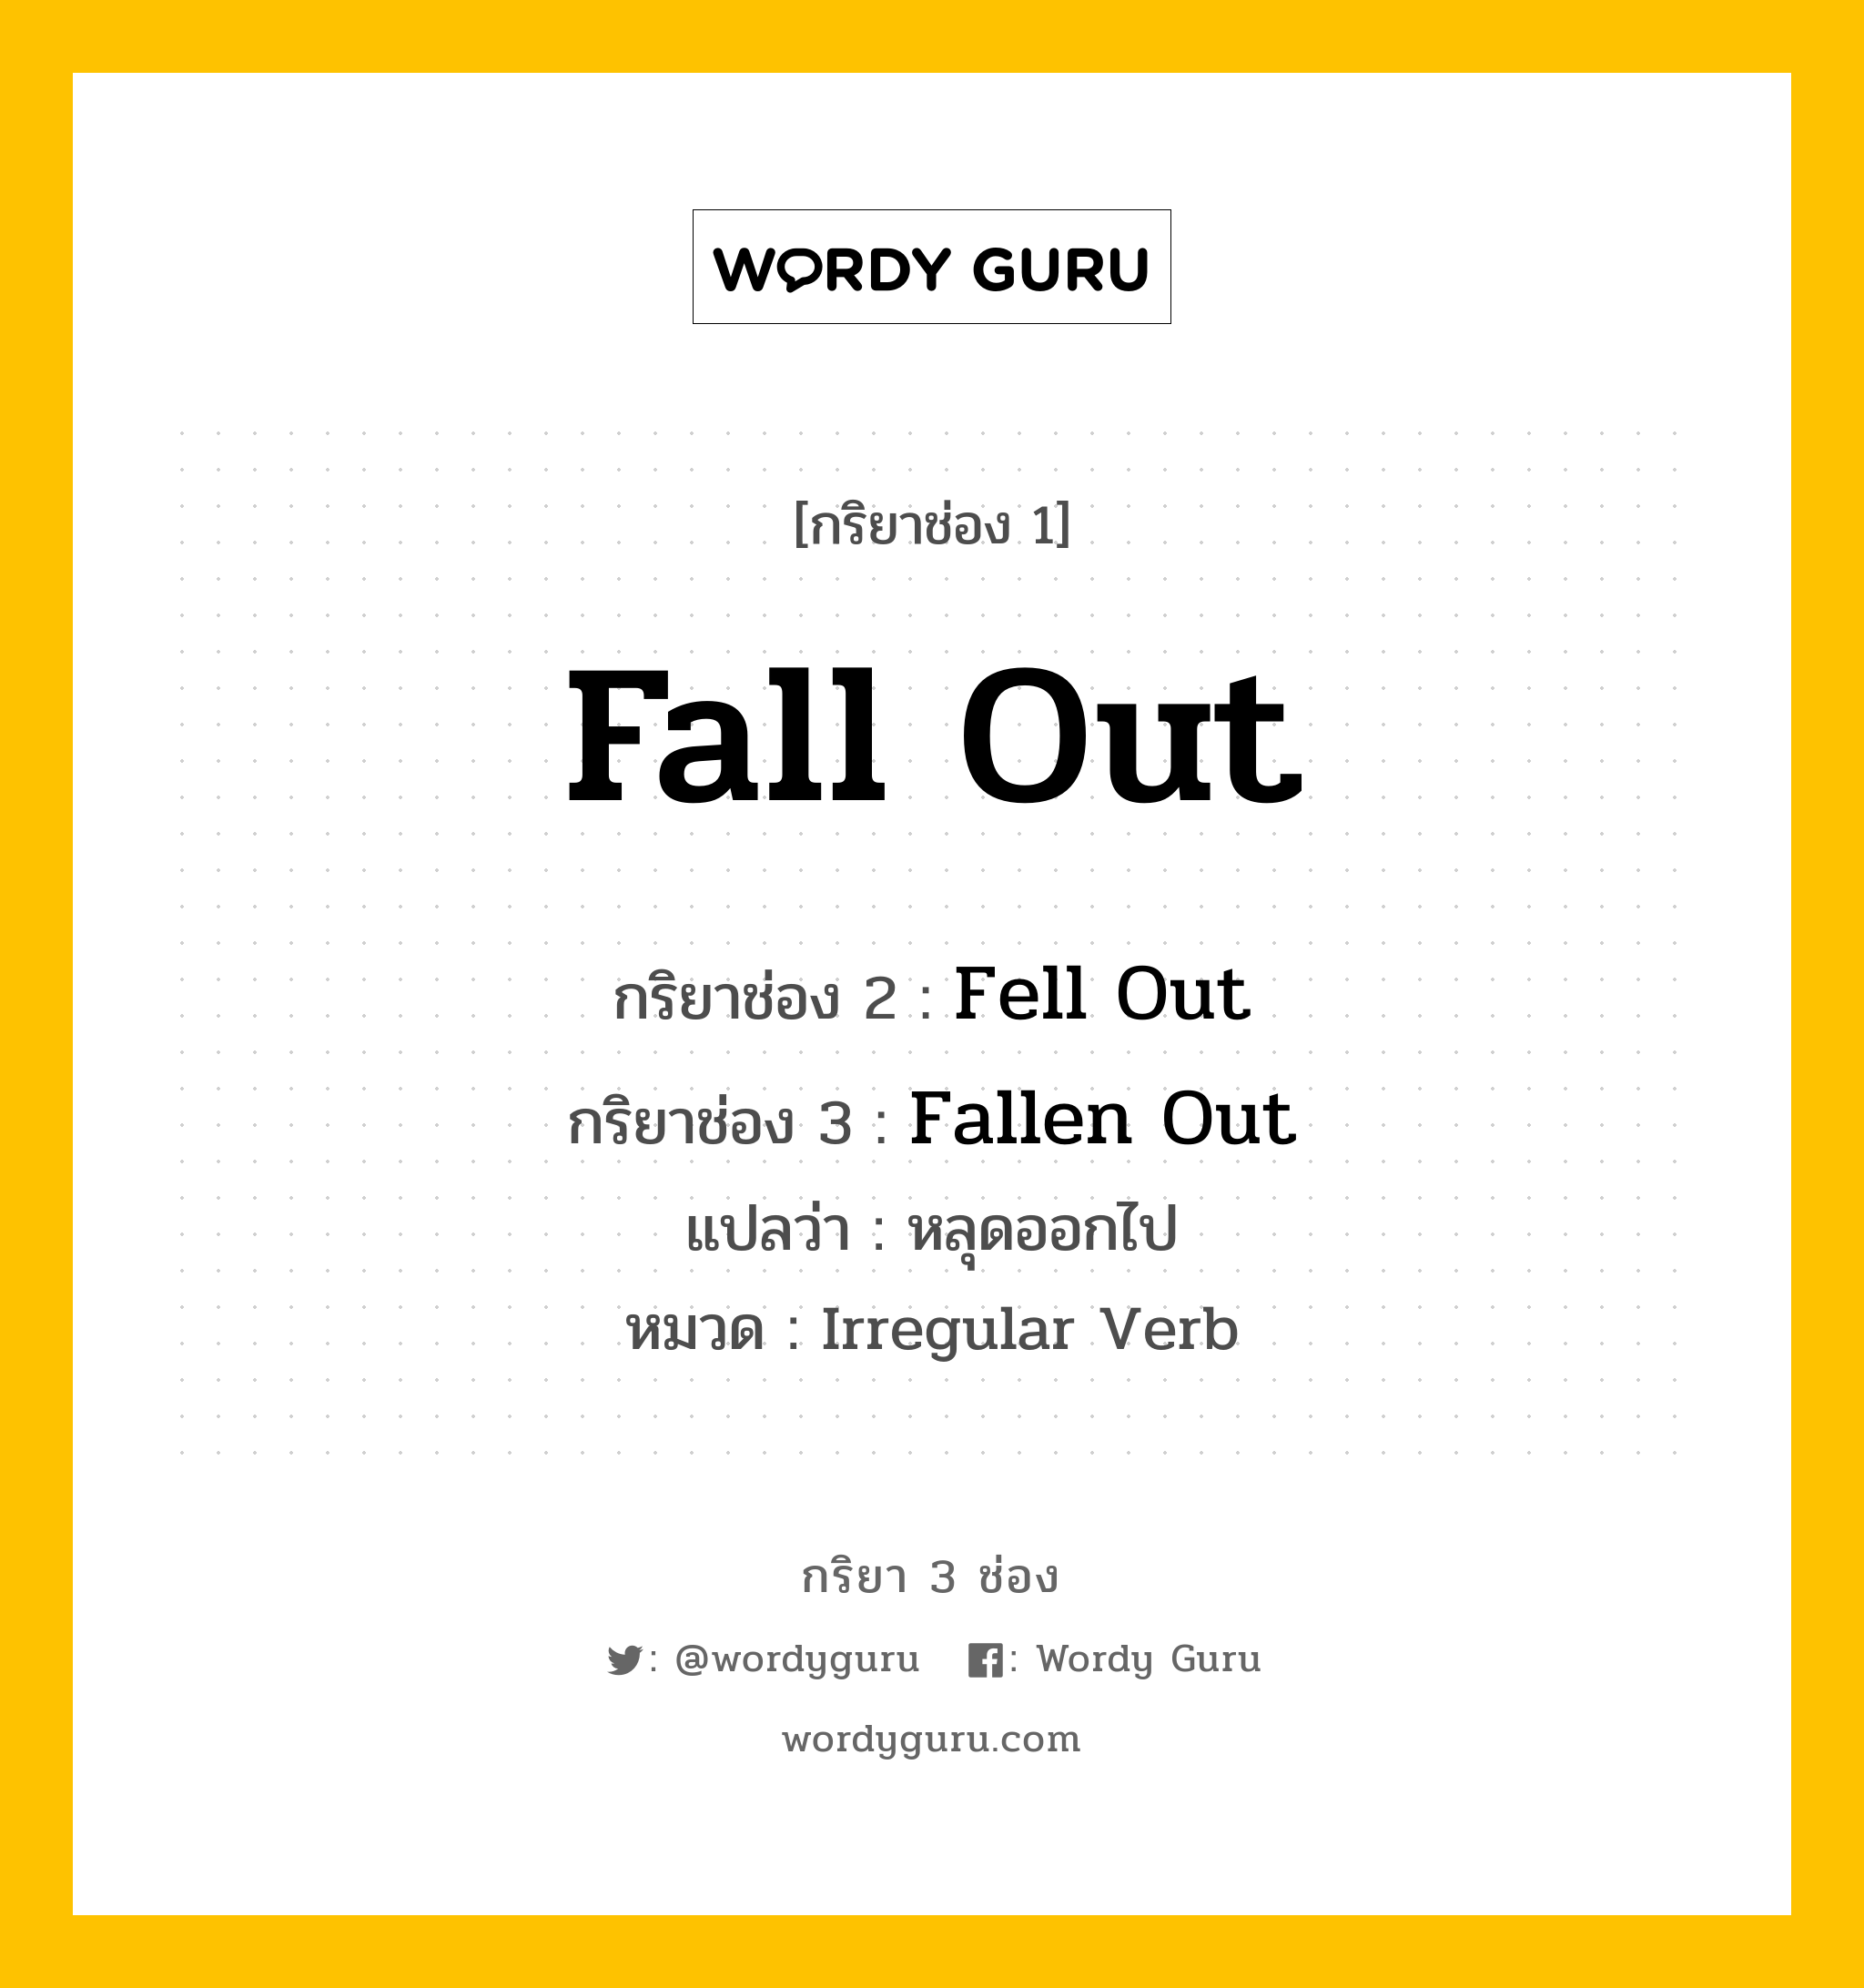 กริยา 3 ช่อง: Fall Out ช่อง 2 Fall Out ช่อง 3 คืออะไร, กริยาช่อง 1 Fall Out กริยาช่อง 2 Fell Out กริยาช่อง 3 Fallen Out แปลว่า หลุดออกไป หมวด Irregular Verb หมวด Irregular Verb